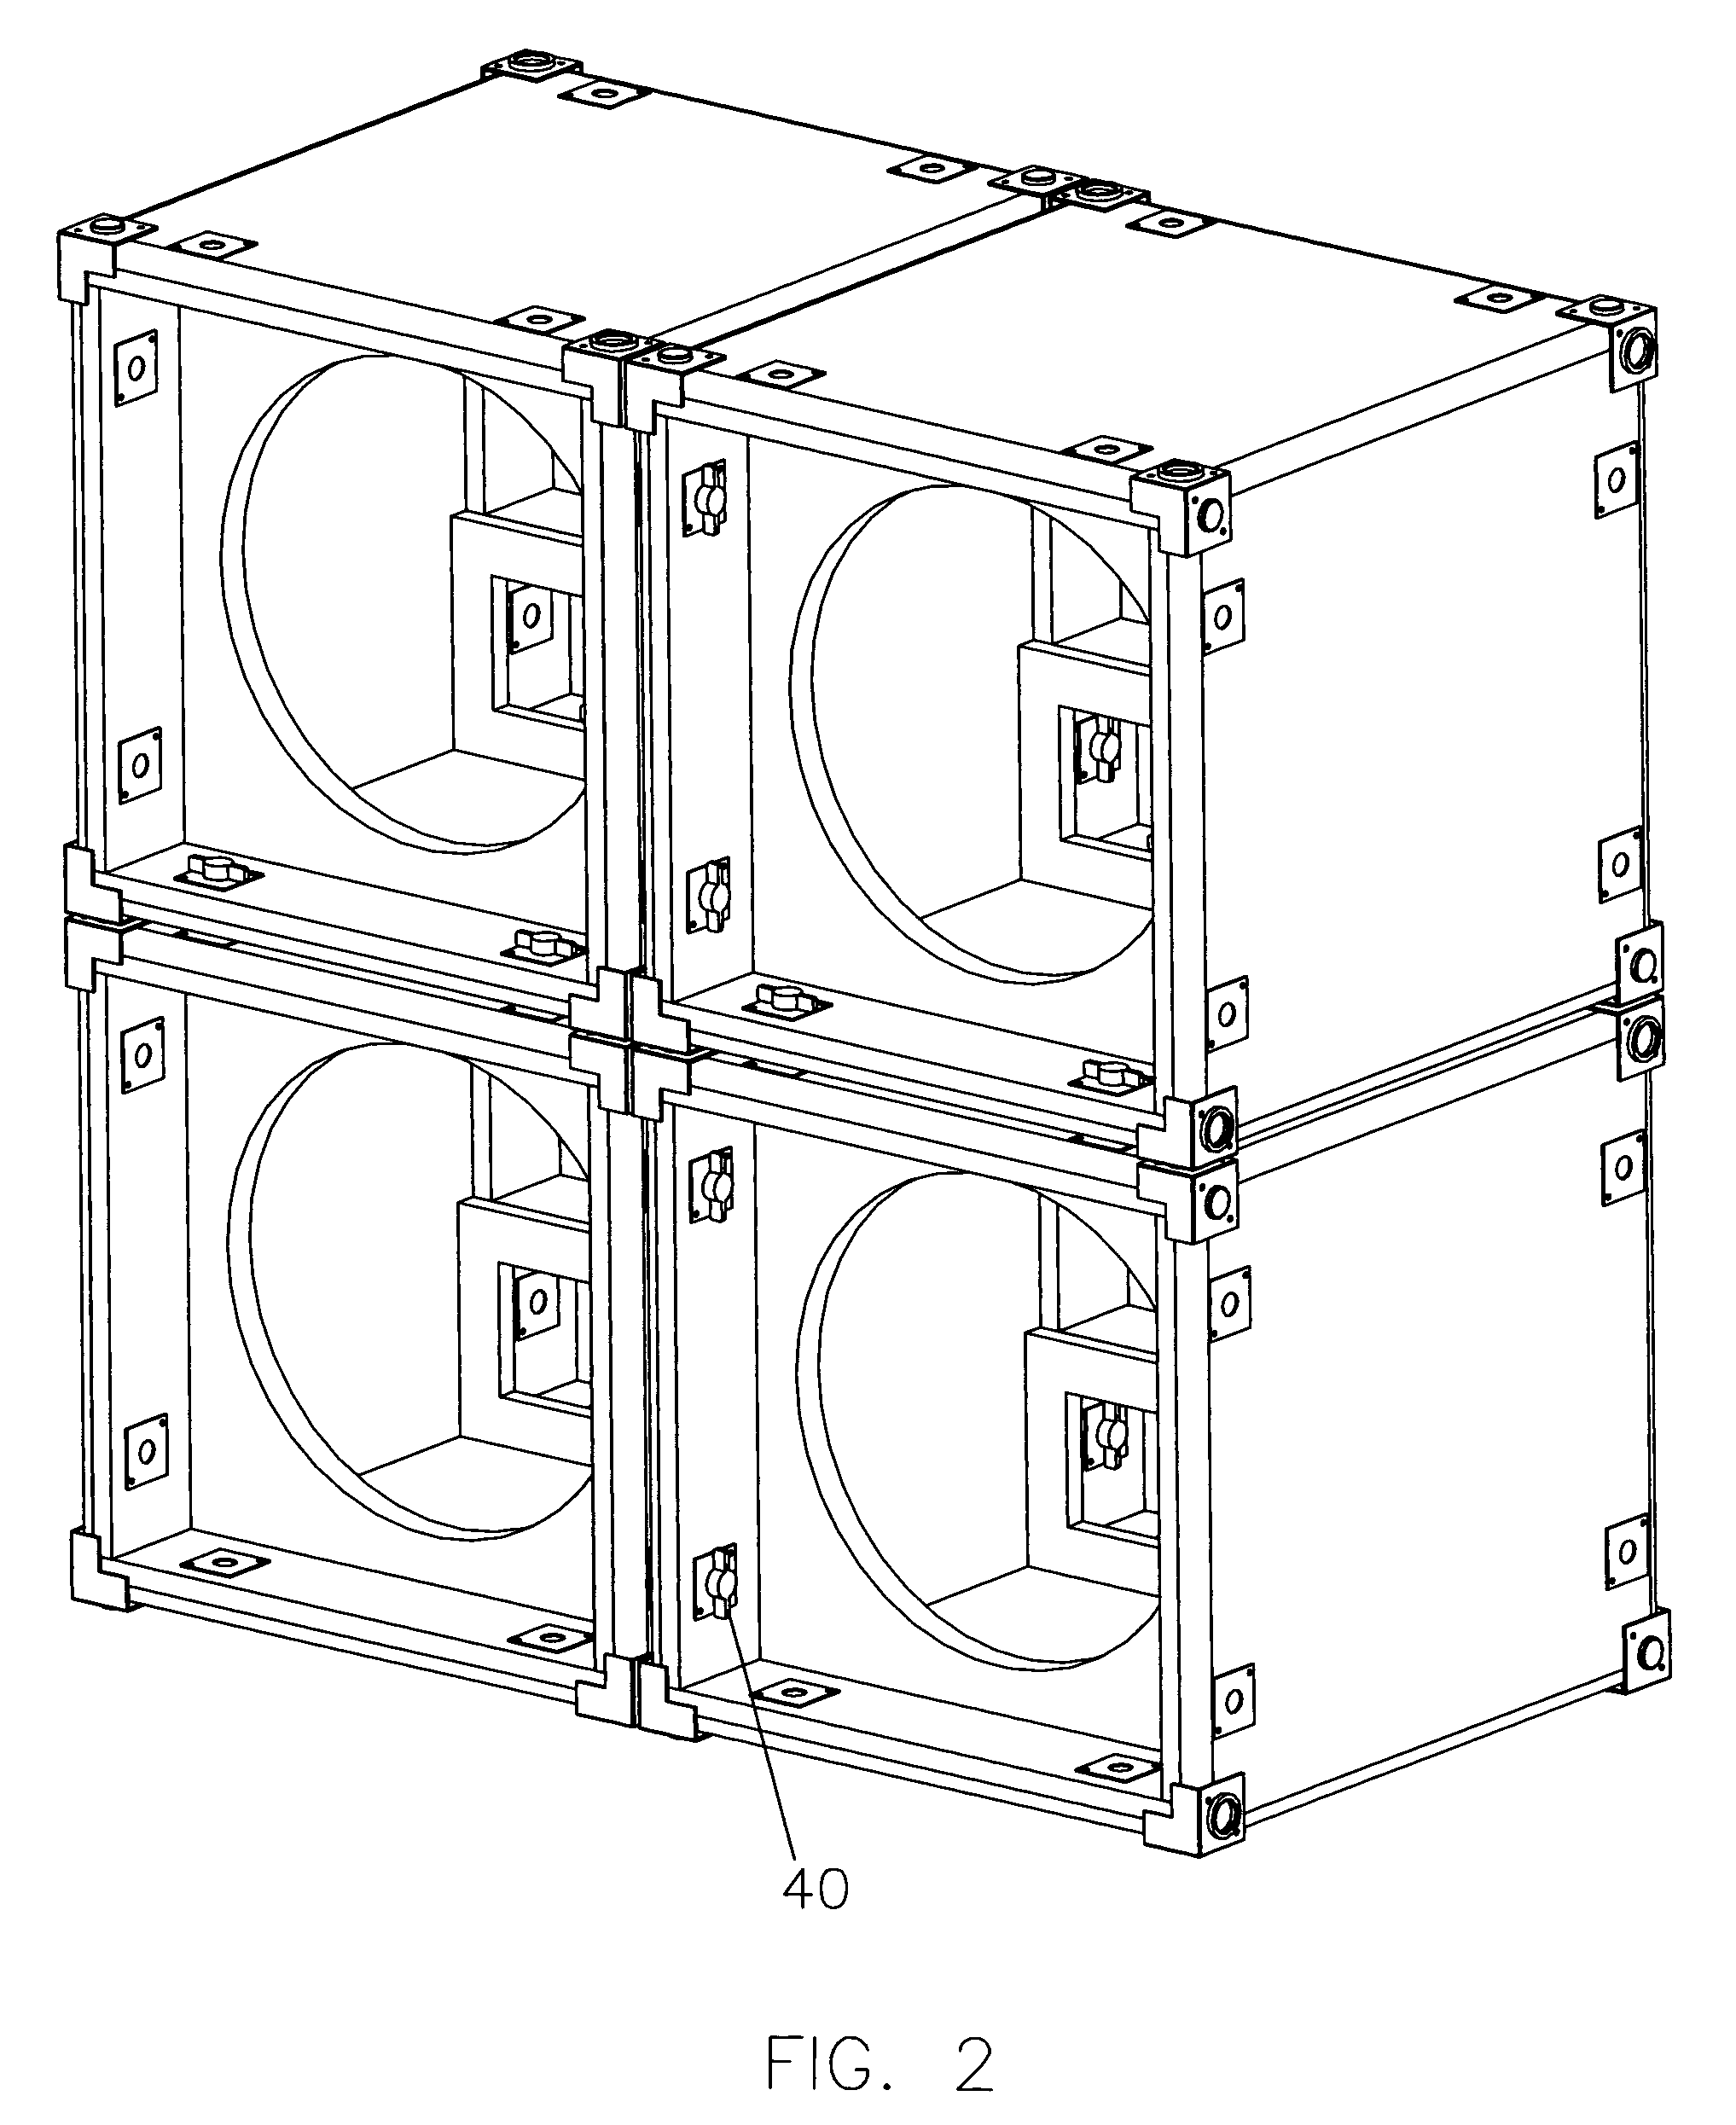 Modular speaker cabinet